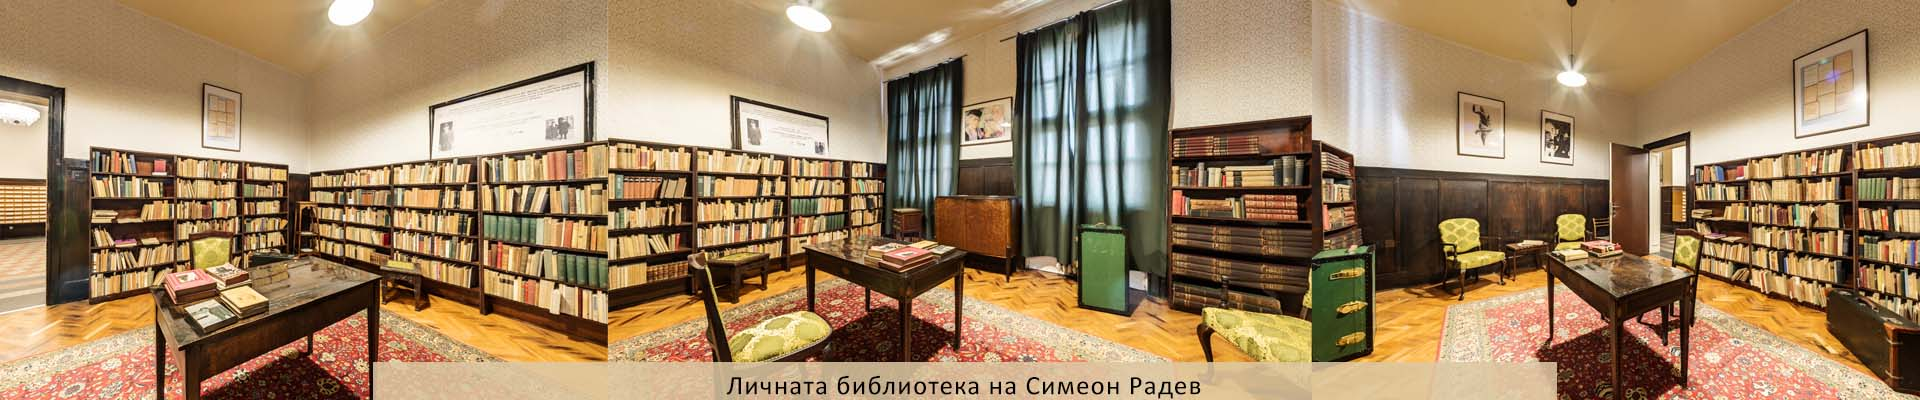 Личната библиотека на Симеон Радев